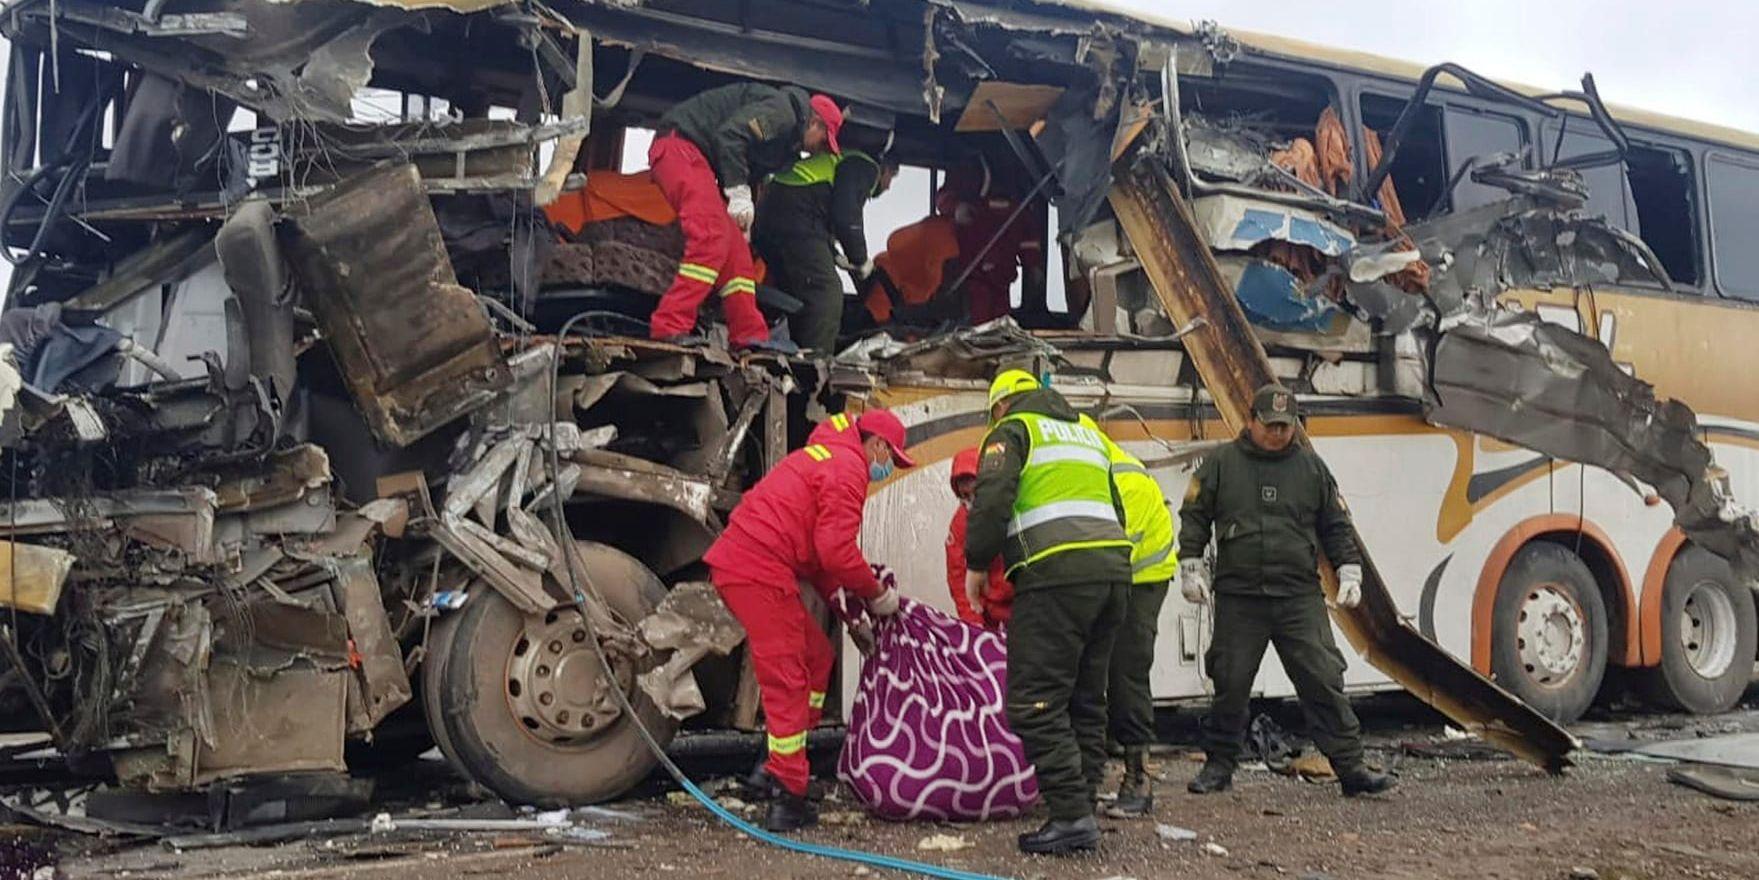 Ett foto taget av polisen i Bolivia visar räddningsarbetet efter den svåra bussolyckan på lördagen.